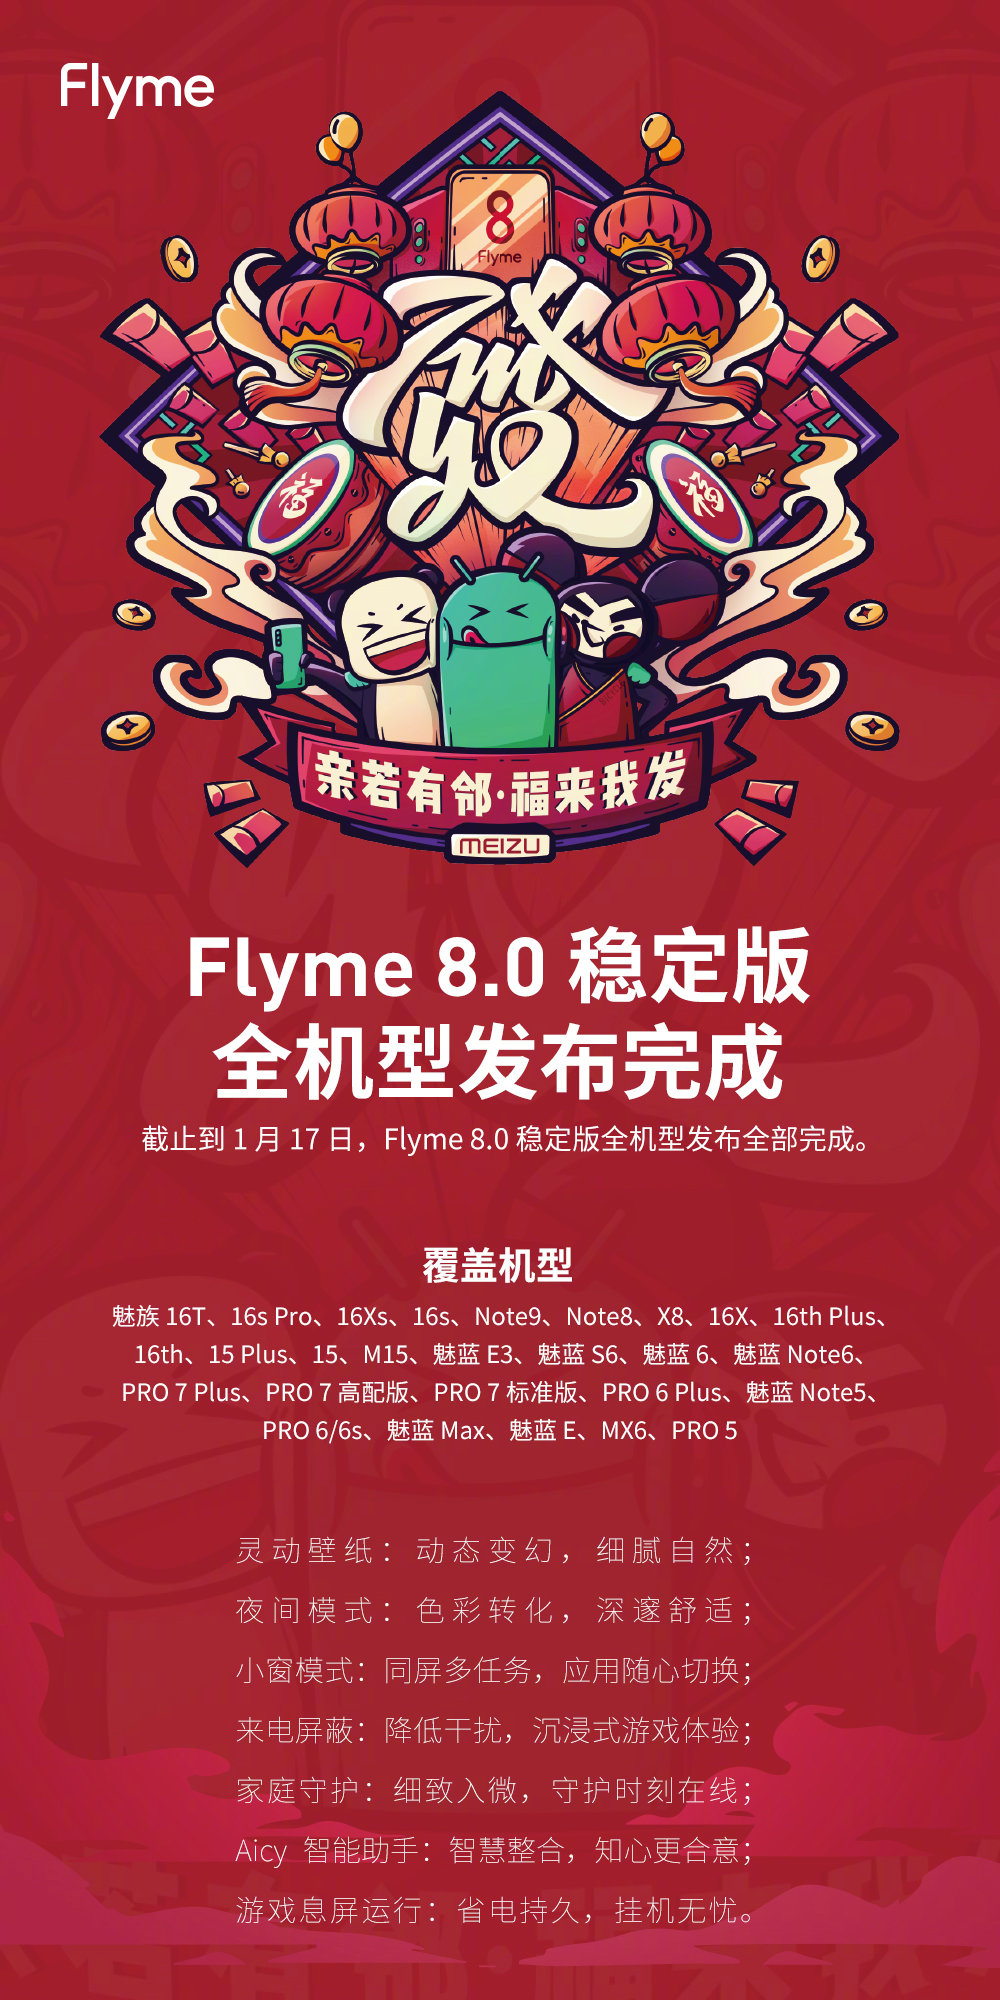 魅族手机Flyme8稳定版来啦，系统软件级全新升级设计方案，共28款型号可升级